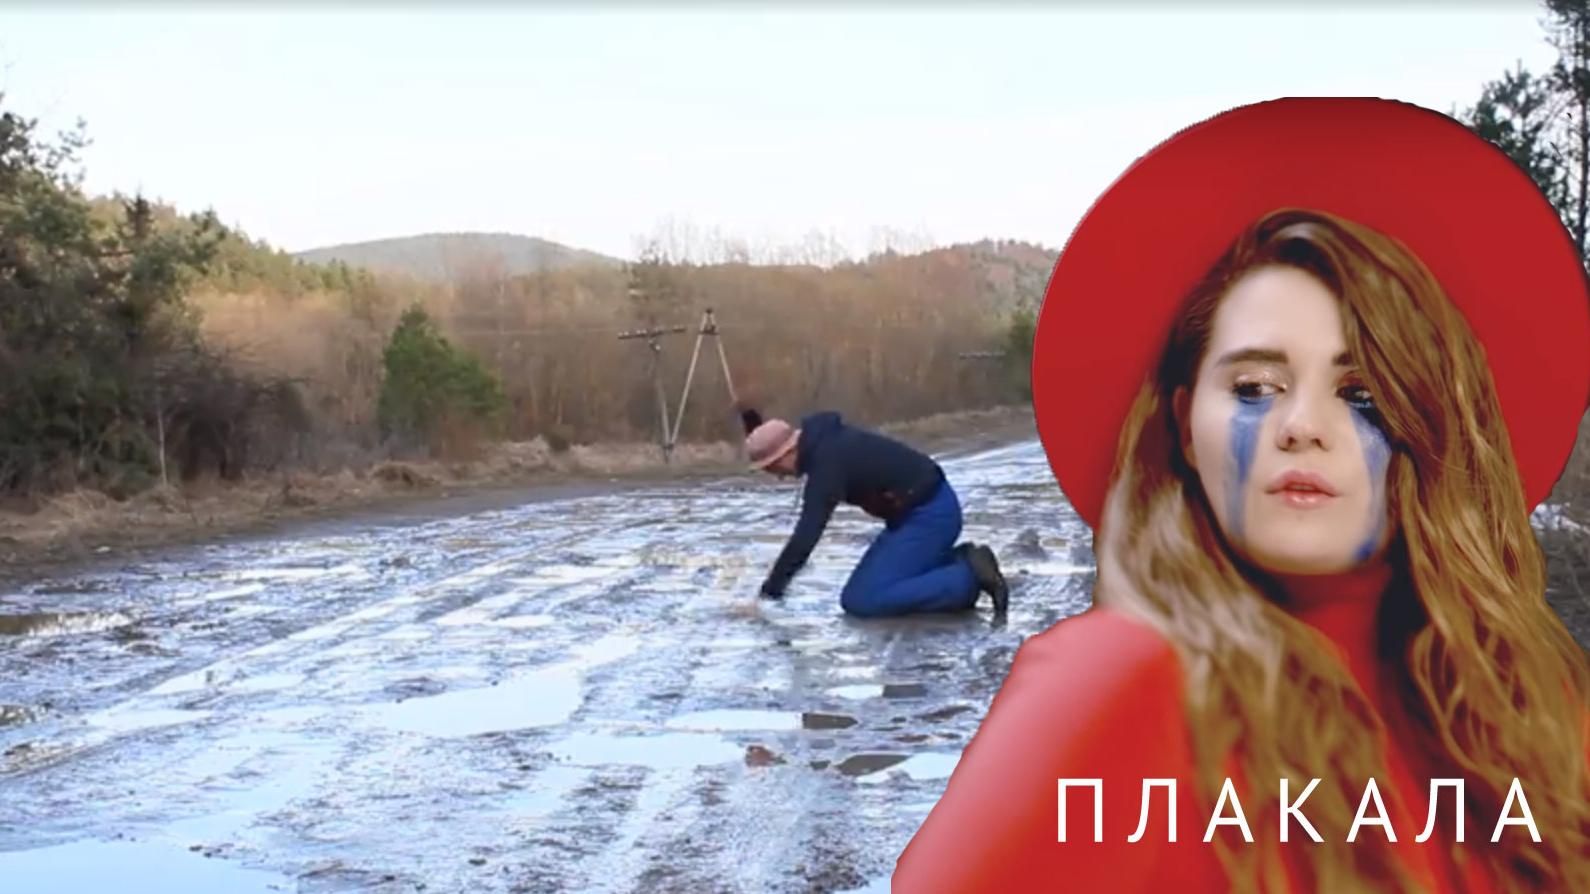 Священник из Львовской области снял клип-пародию на песню KAZKA "Плакала": забавное видео